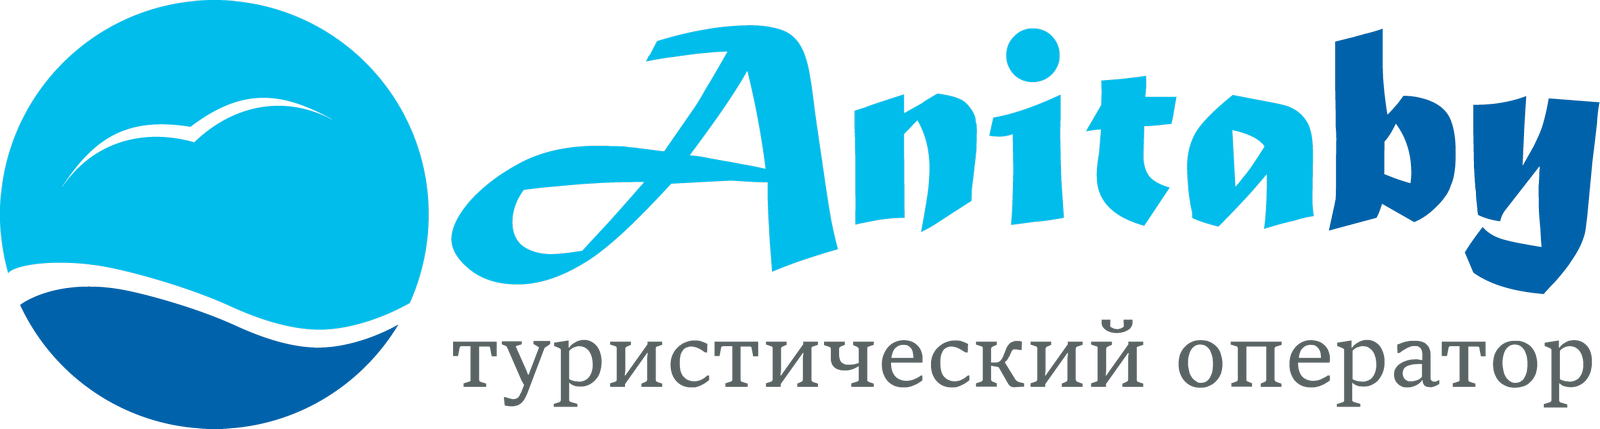 Логотип сайта https://anitatour.ru/ - Анитатур